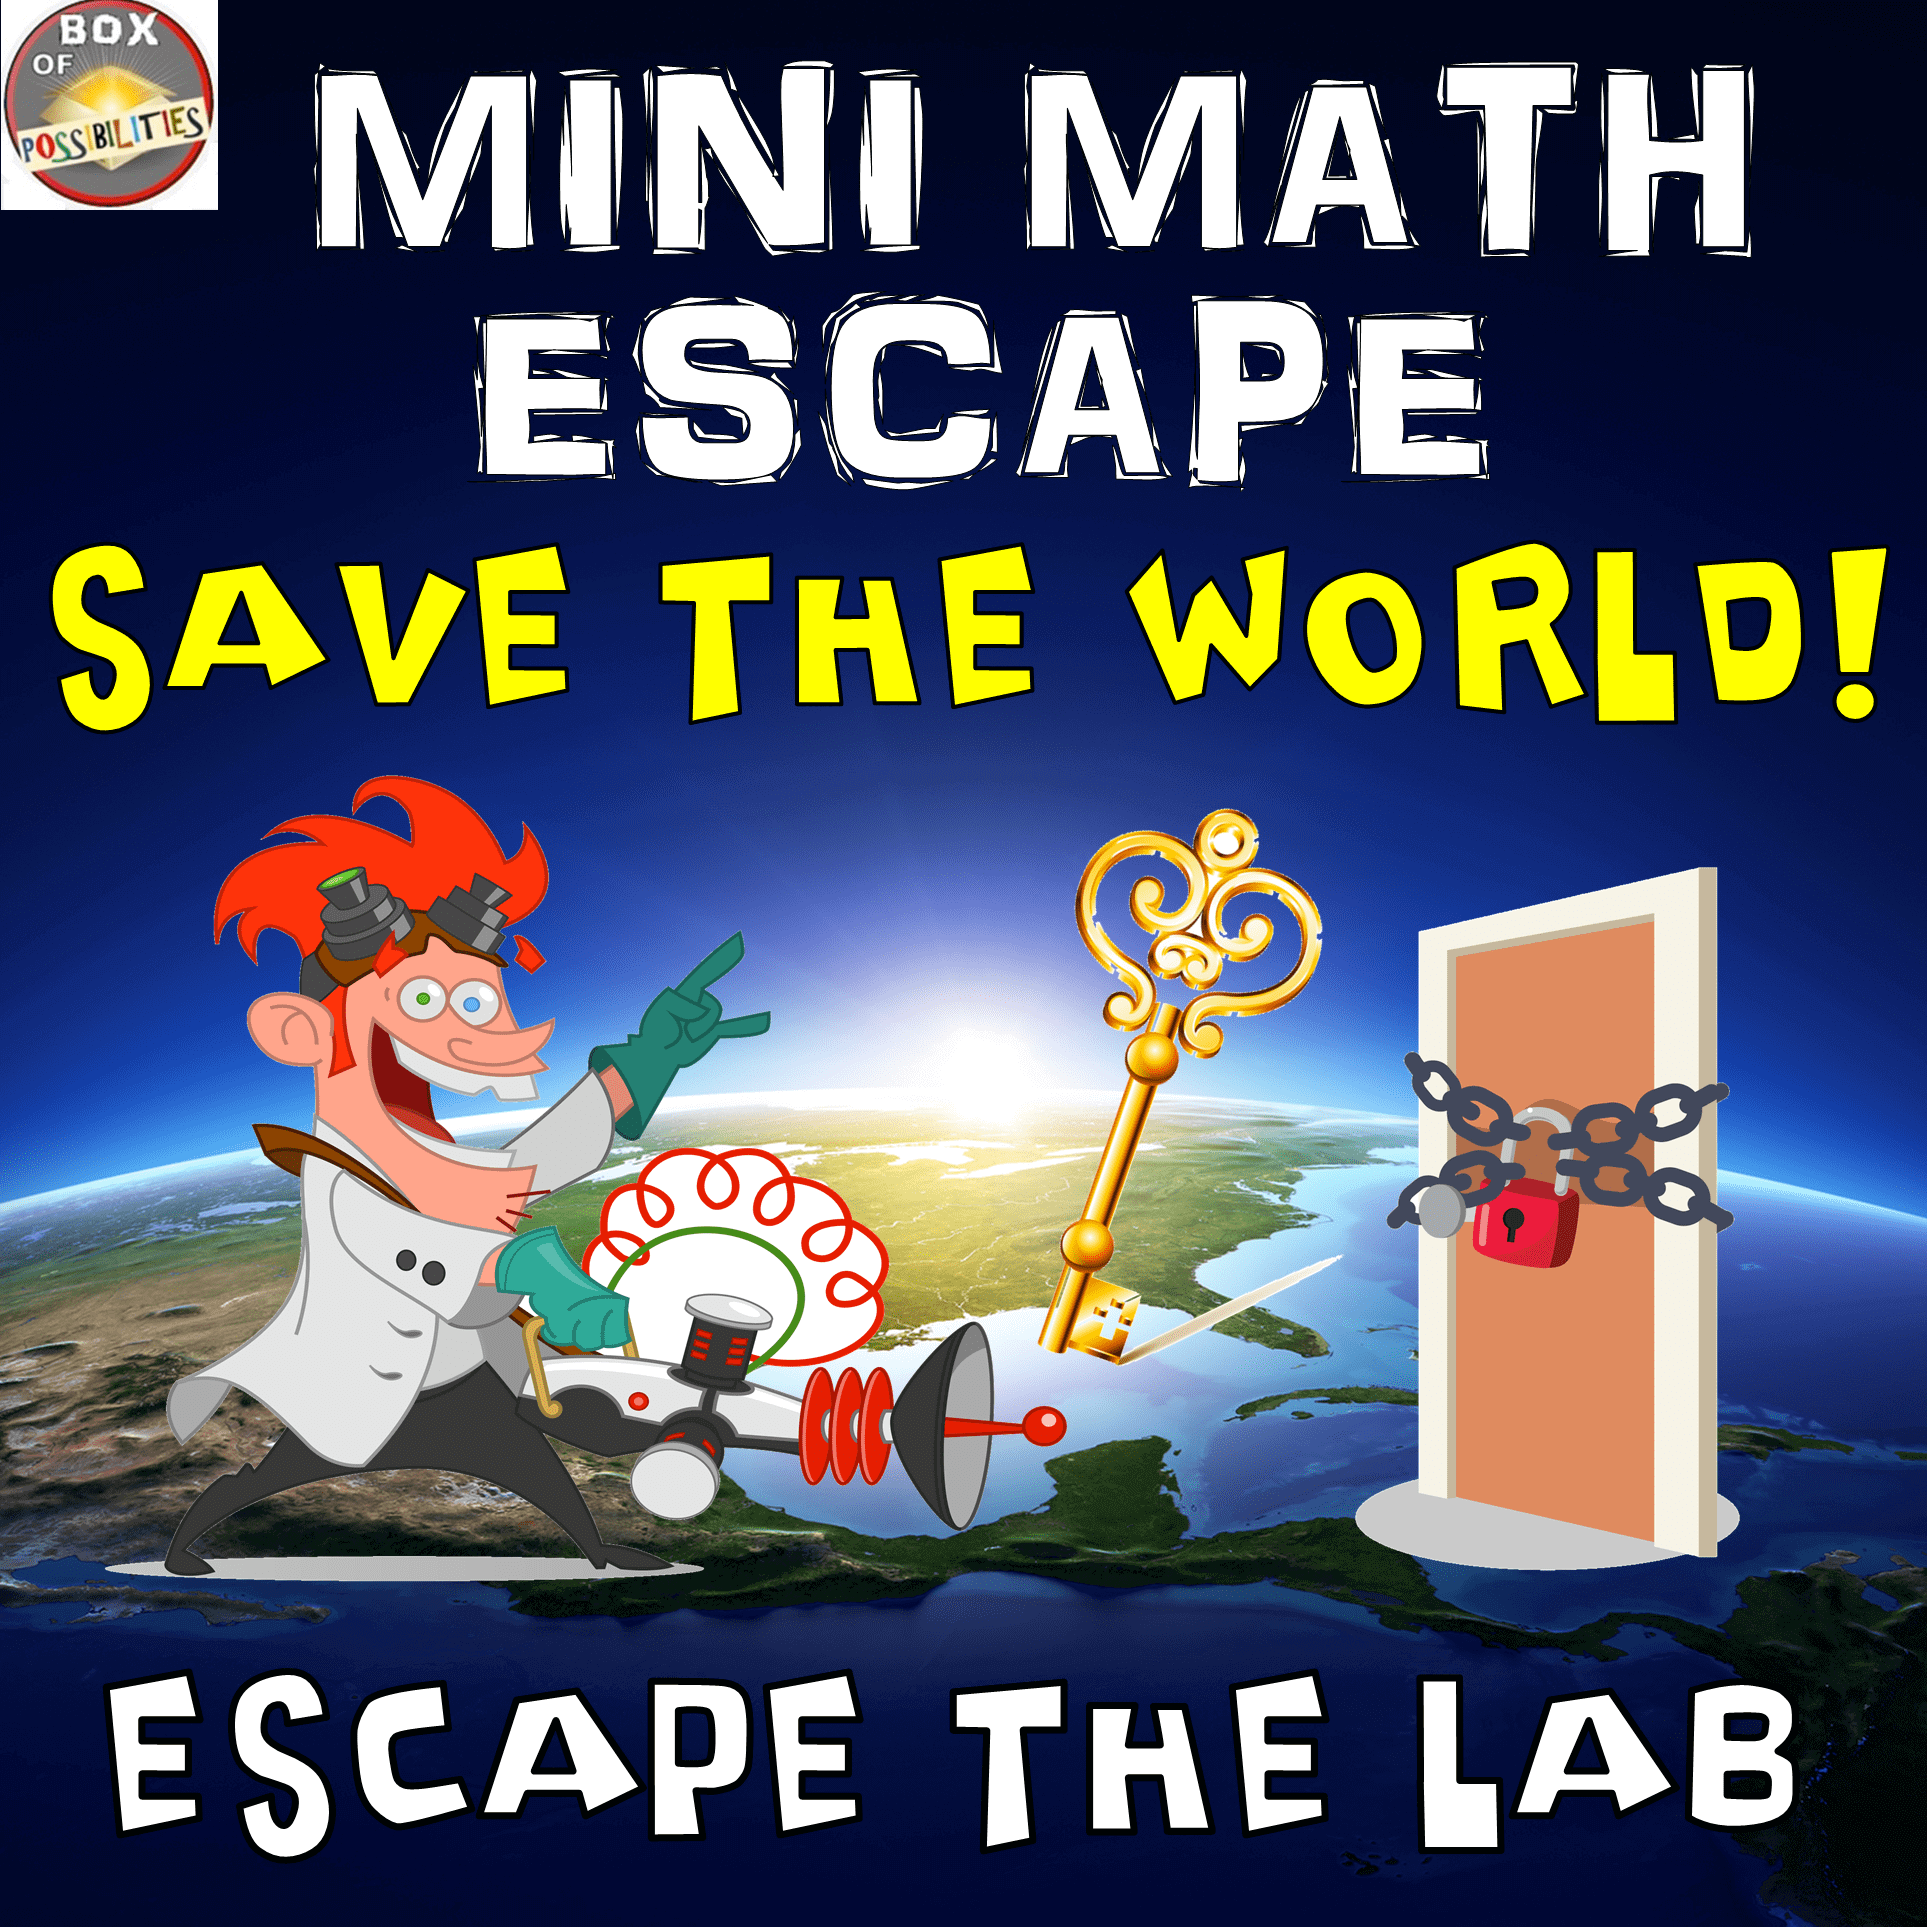 mini-math-escape-room-printable-escape-the-lab-save-world-fun-math